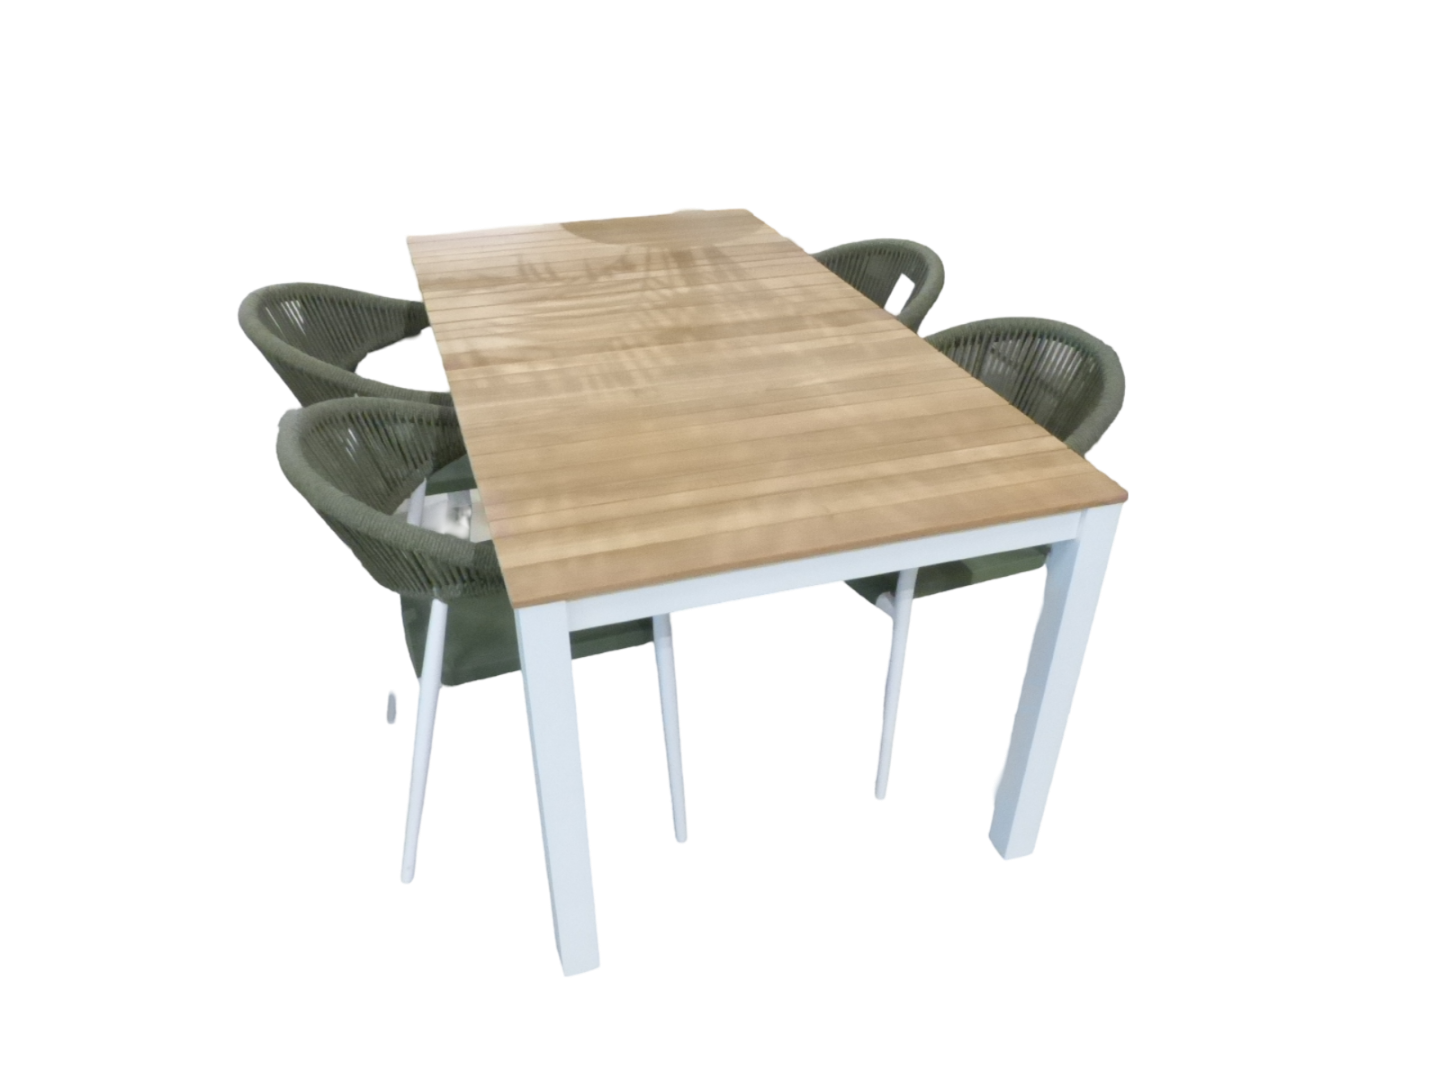 Yoi Tuinset Arashi tafel white, teak 169x90 cm met 4 stoelen Matera stoel white, green - 